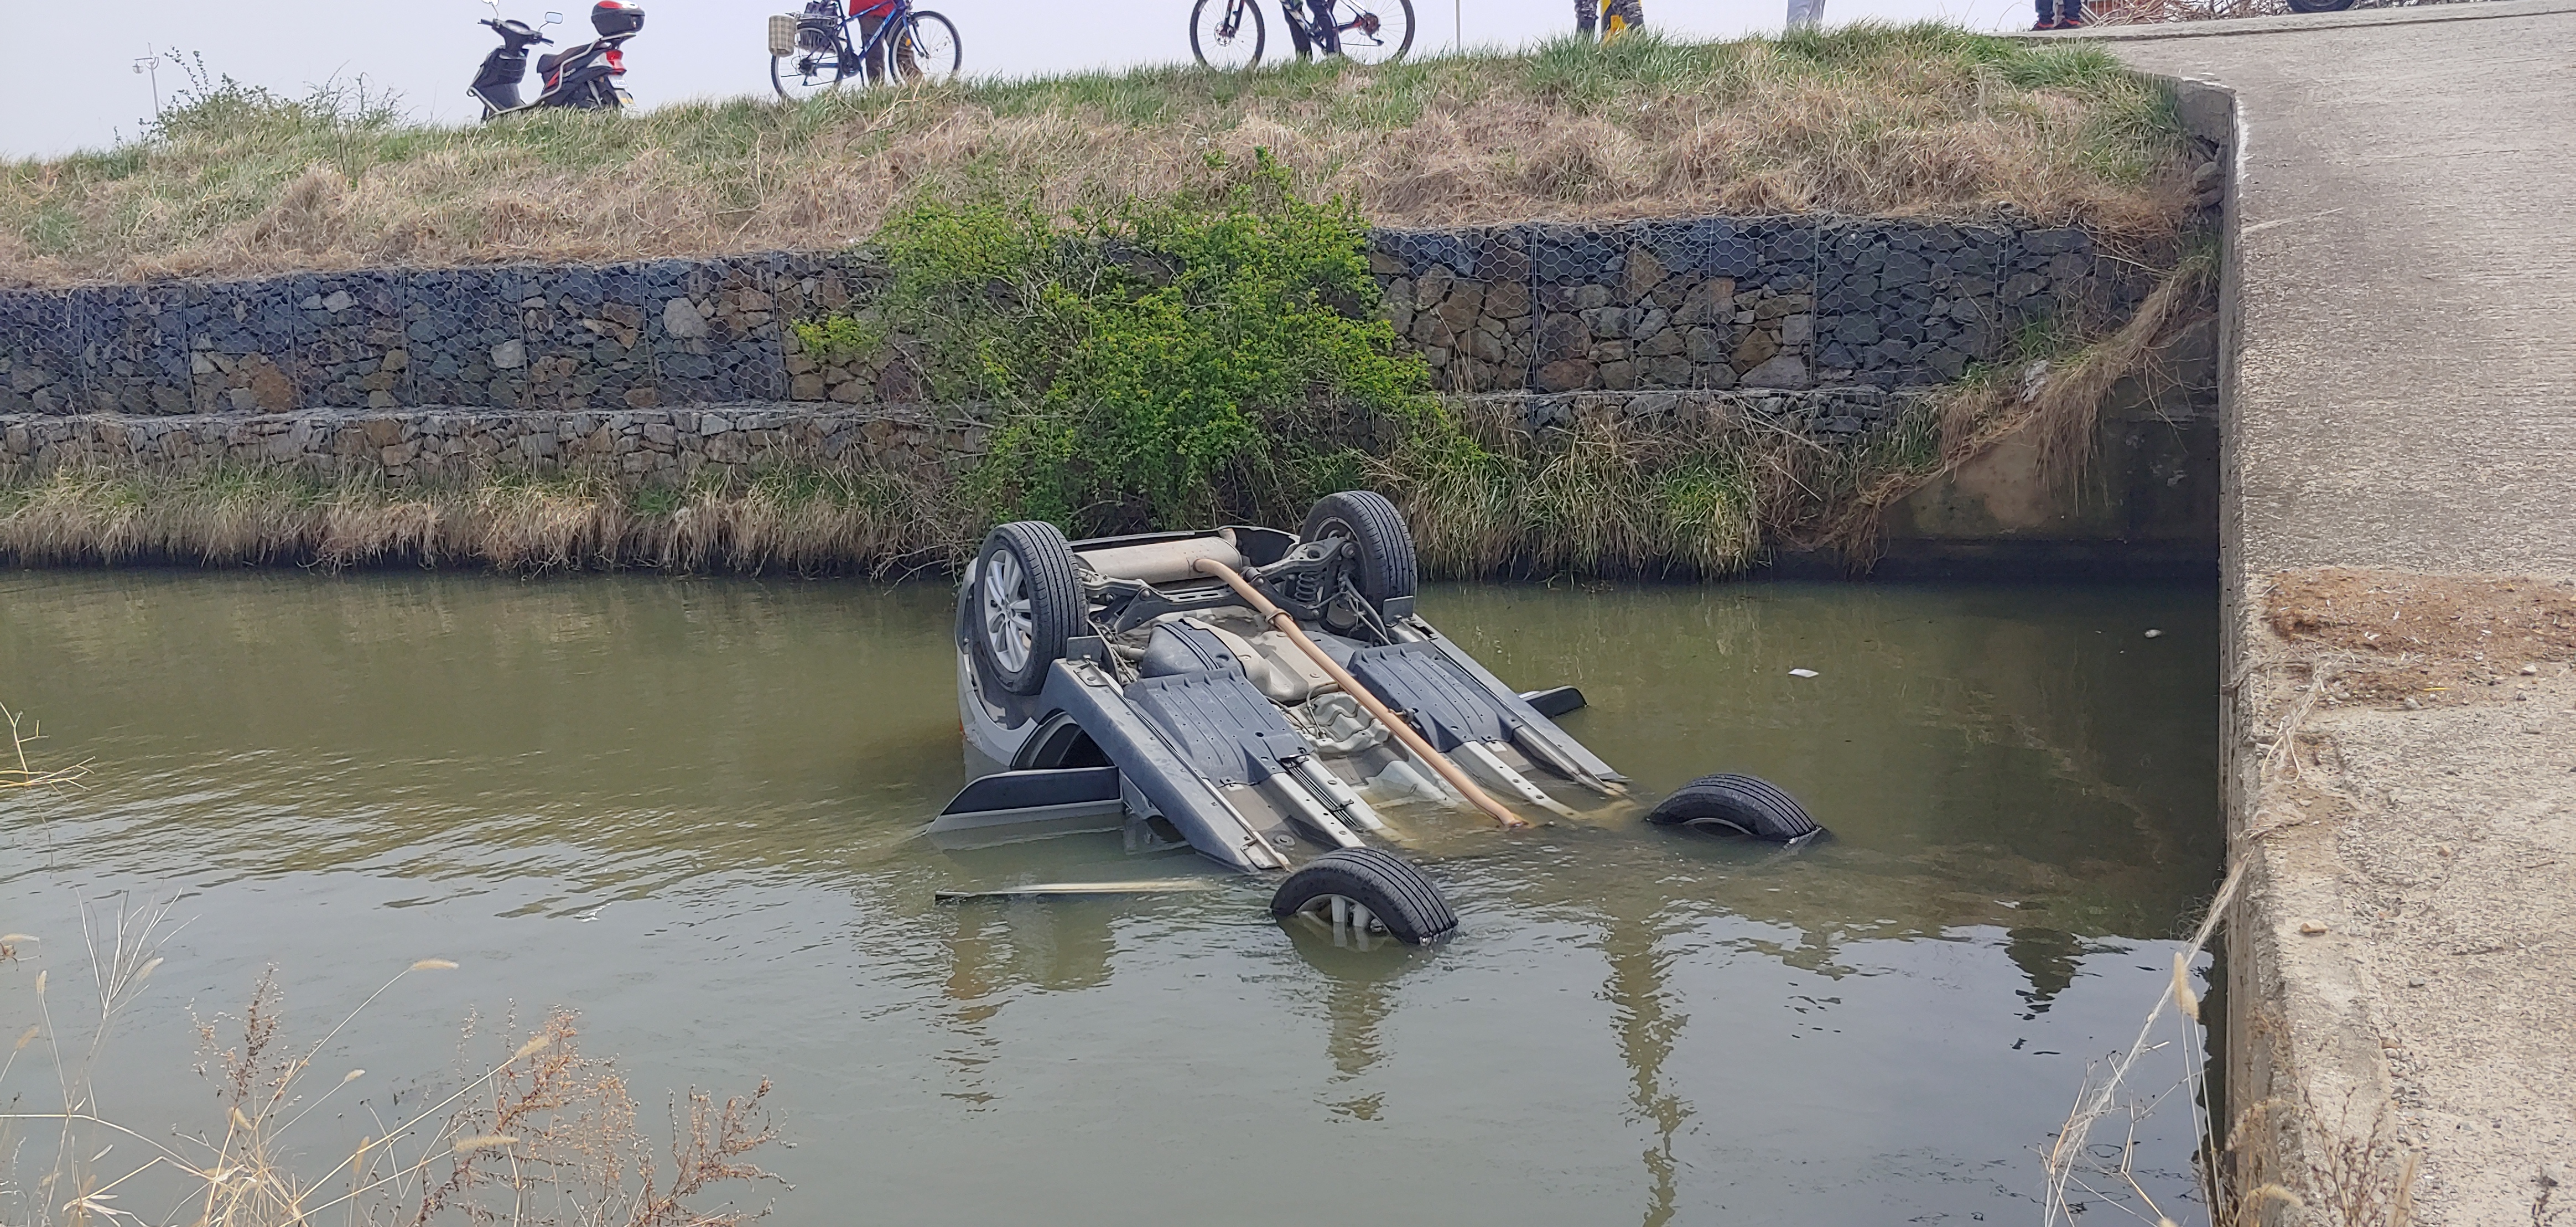  어제(21일) 낮 12시 30분쯤 경남 김해시 화목동 봉곡천 주변 농로에서 일가족 3명이 탄 SUV가 맞은편 차량을 피하려다 약 3m 아래 수로로 추락해 뒤집혔다. 